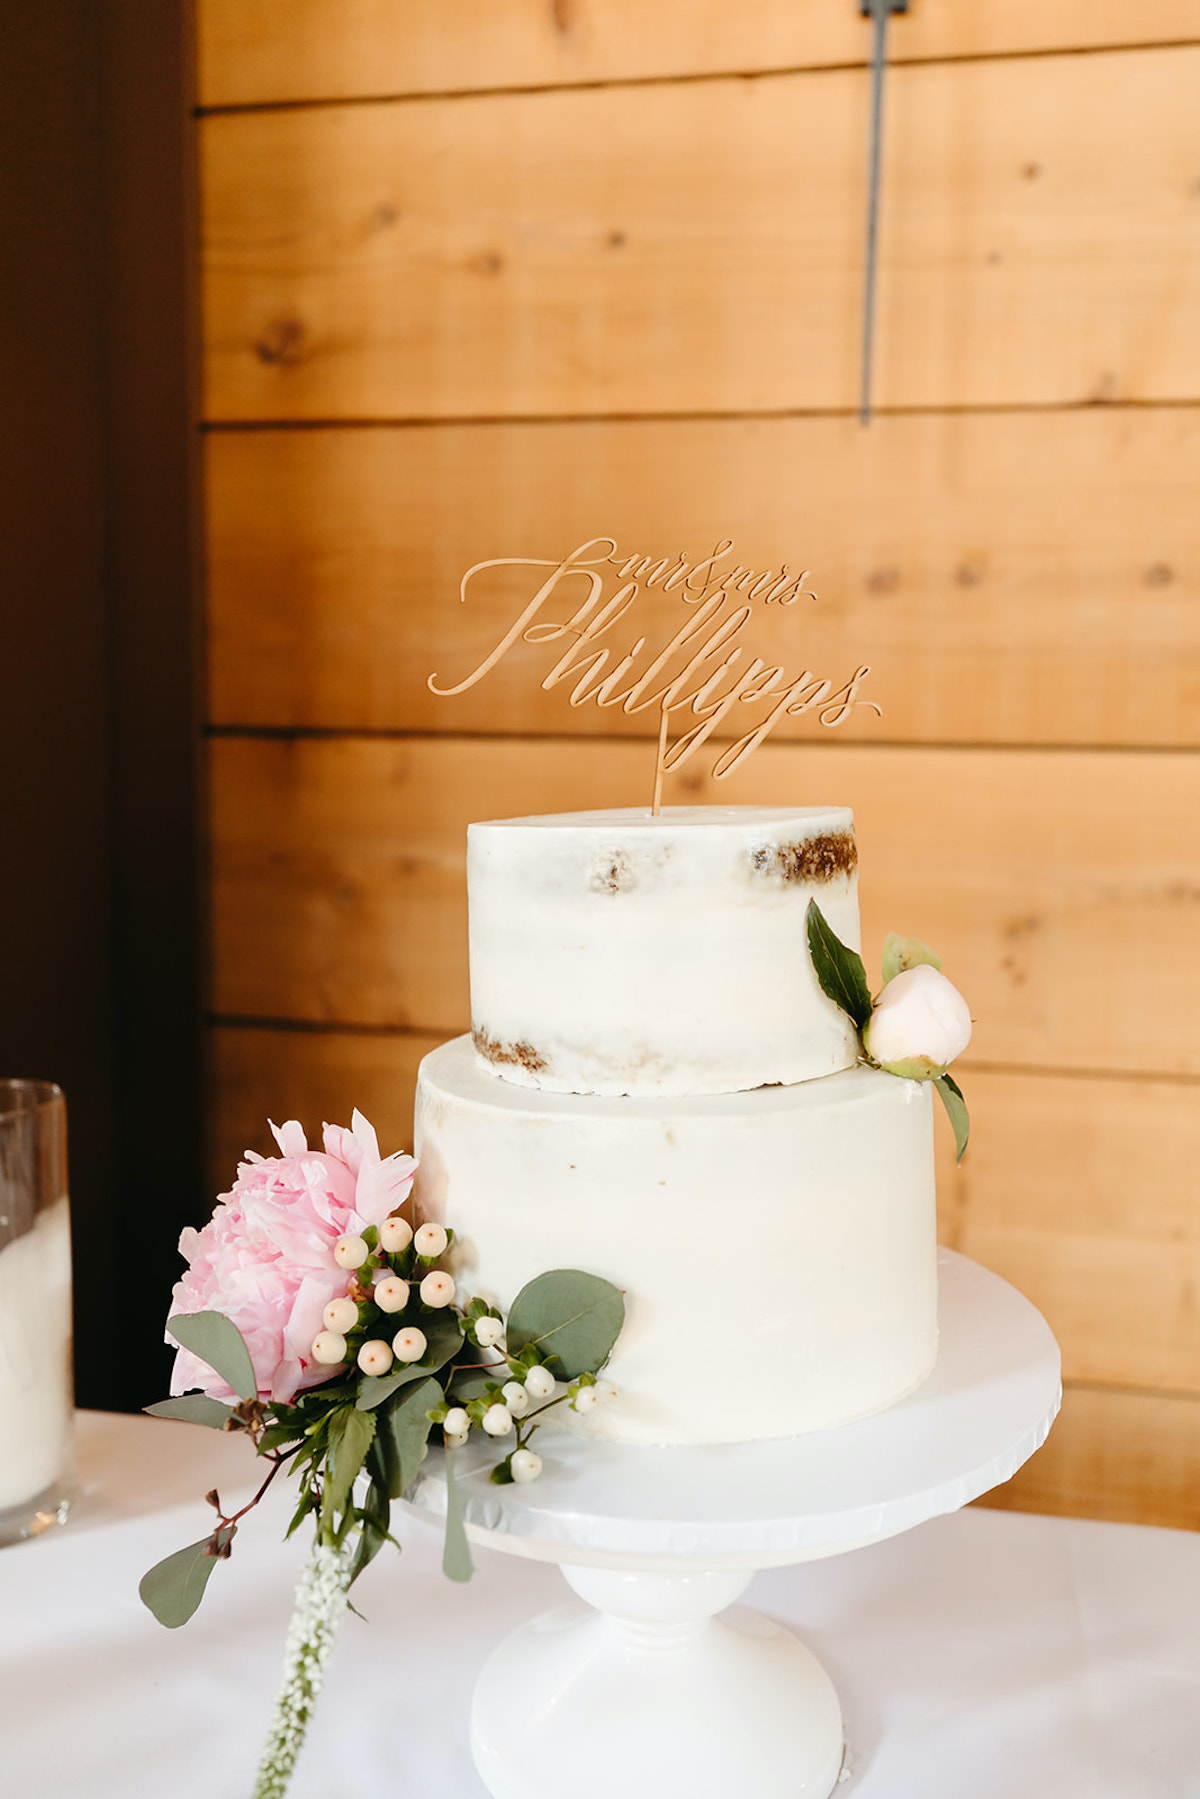 Minimalist wedding cake with flowers